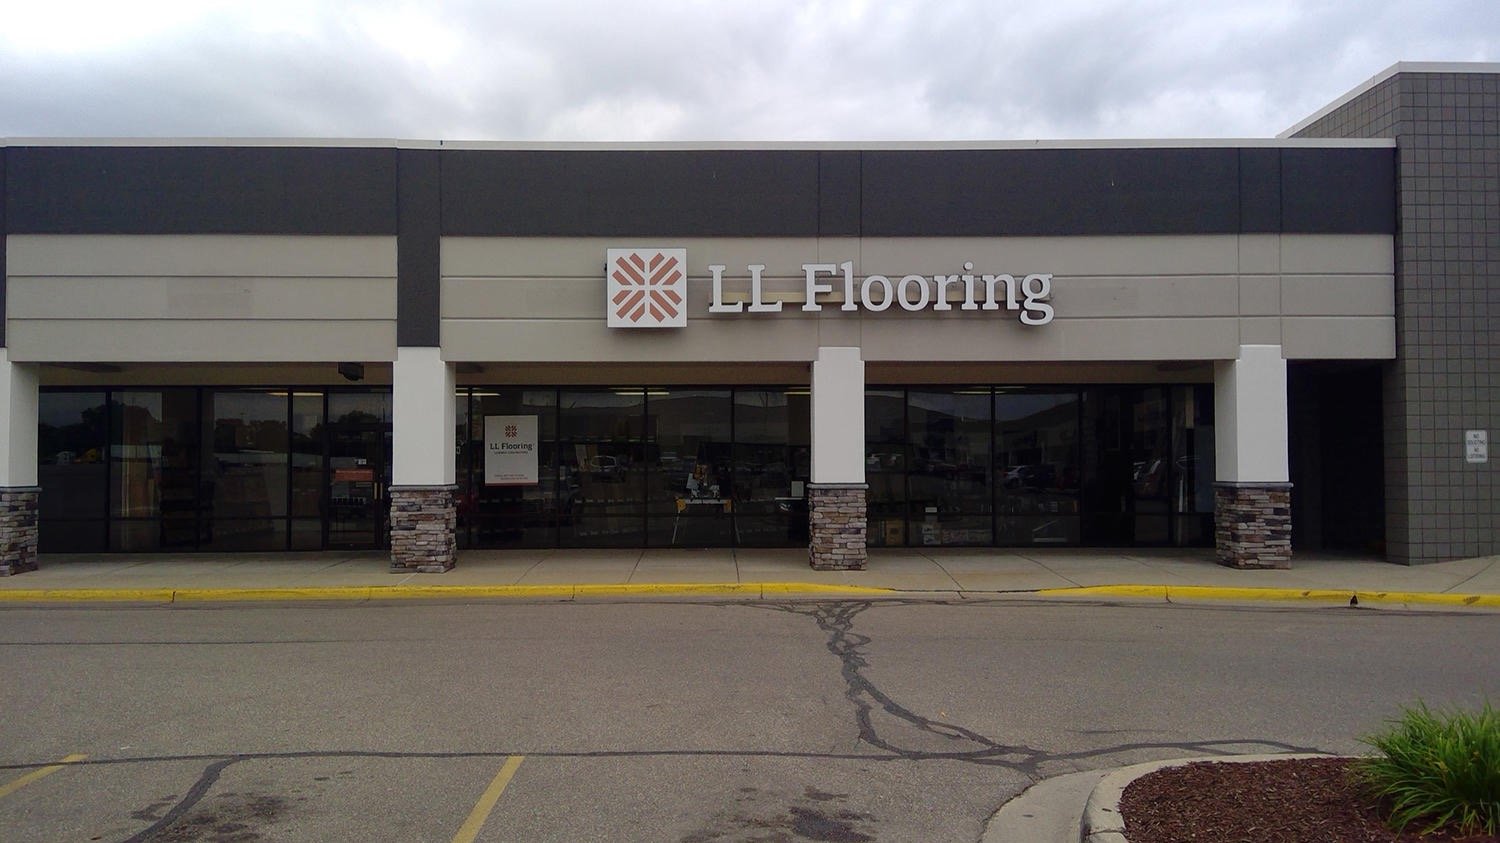 LL Flooring #1116 Lansing | 462 East Edgewood Blvd. | Storefront